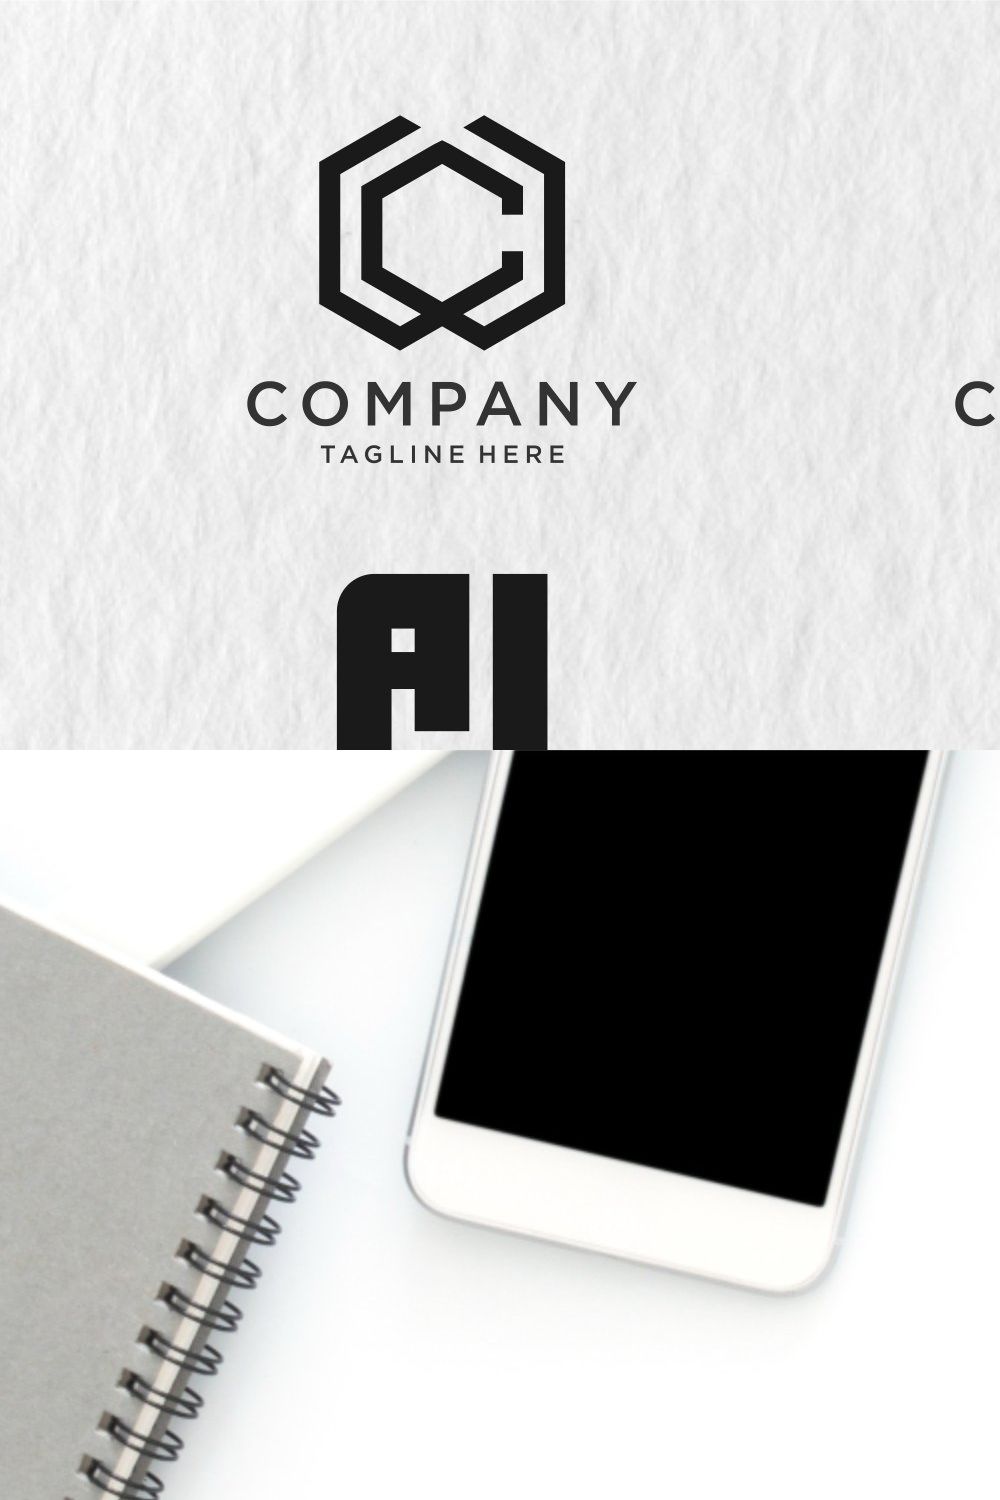 monogram logo design - SVG file pinterest preview image.